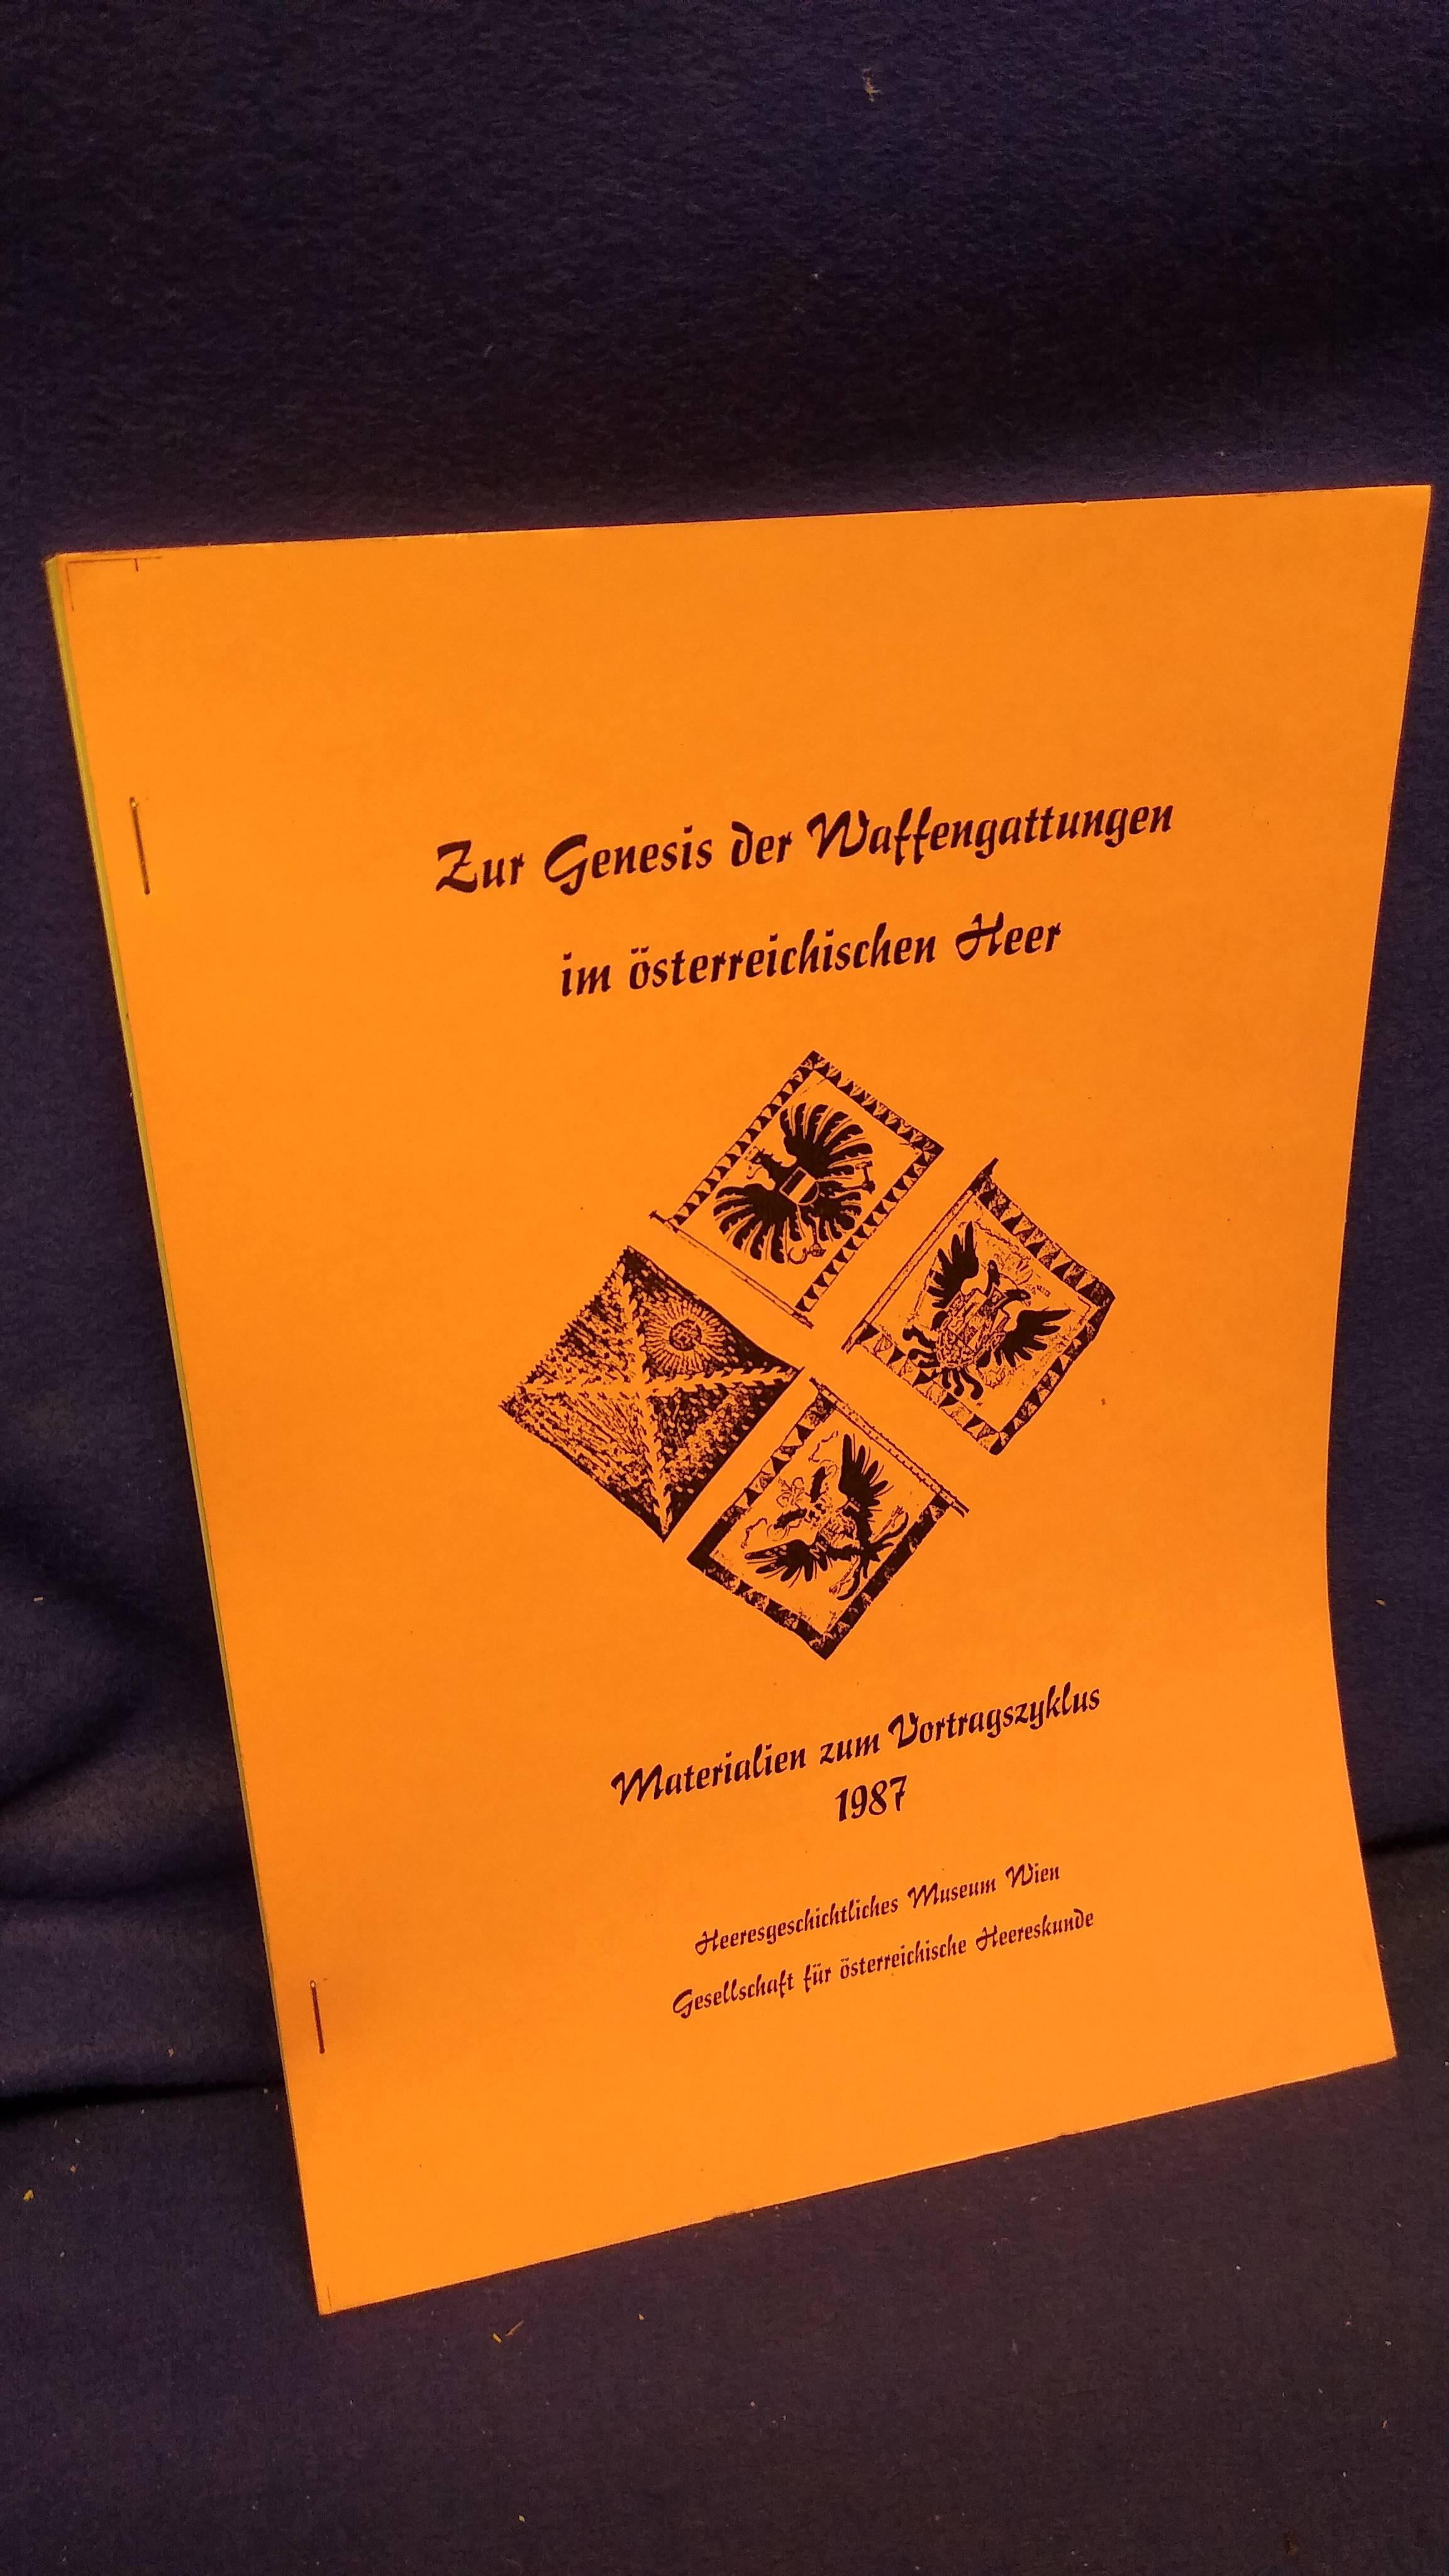 Zur Genesis der Waffengattungen im österreichischen Heer. Materialien zum Vortragszyklus 1987.